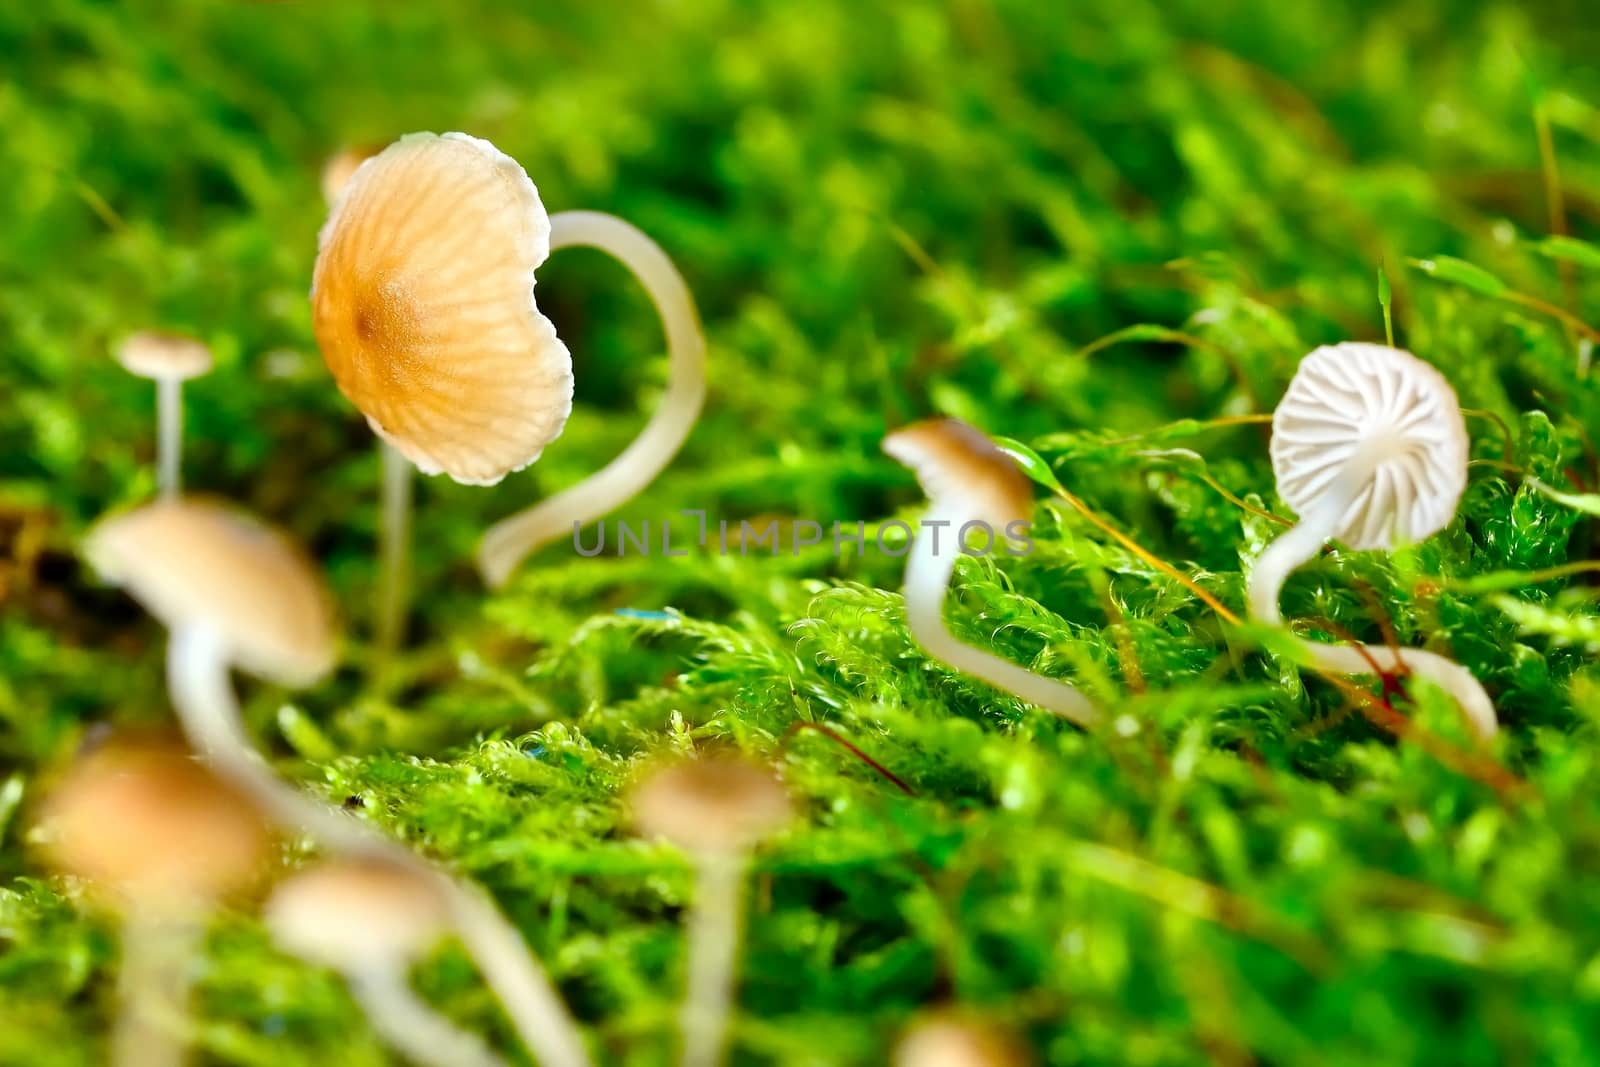 Macro shot of small miniature mushrooms in moss.